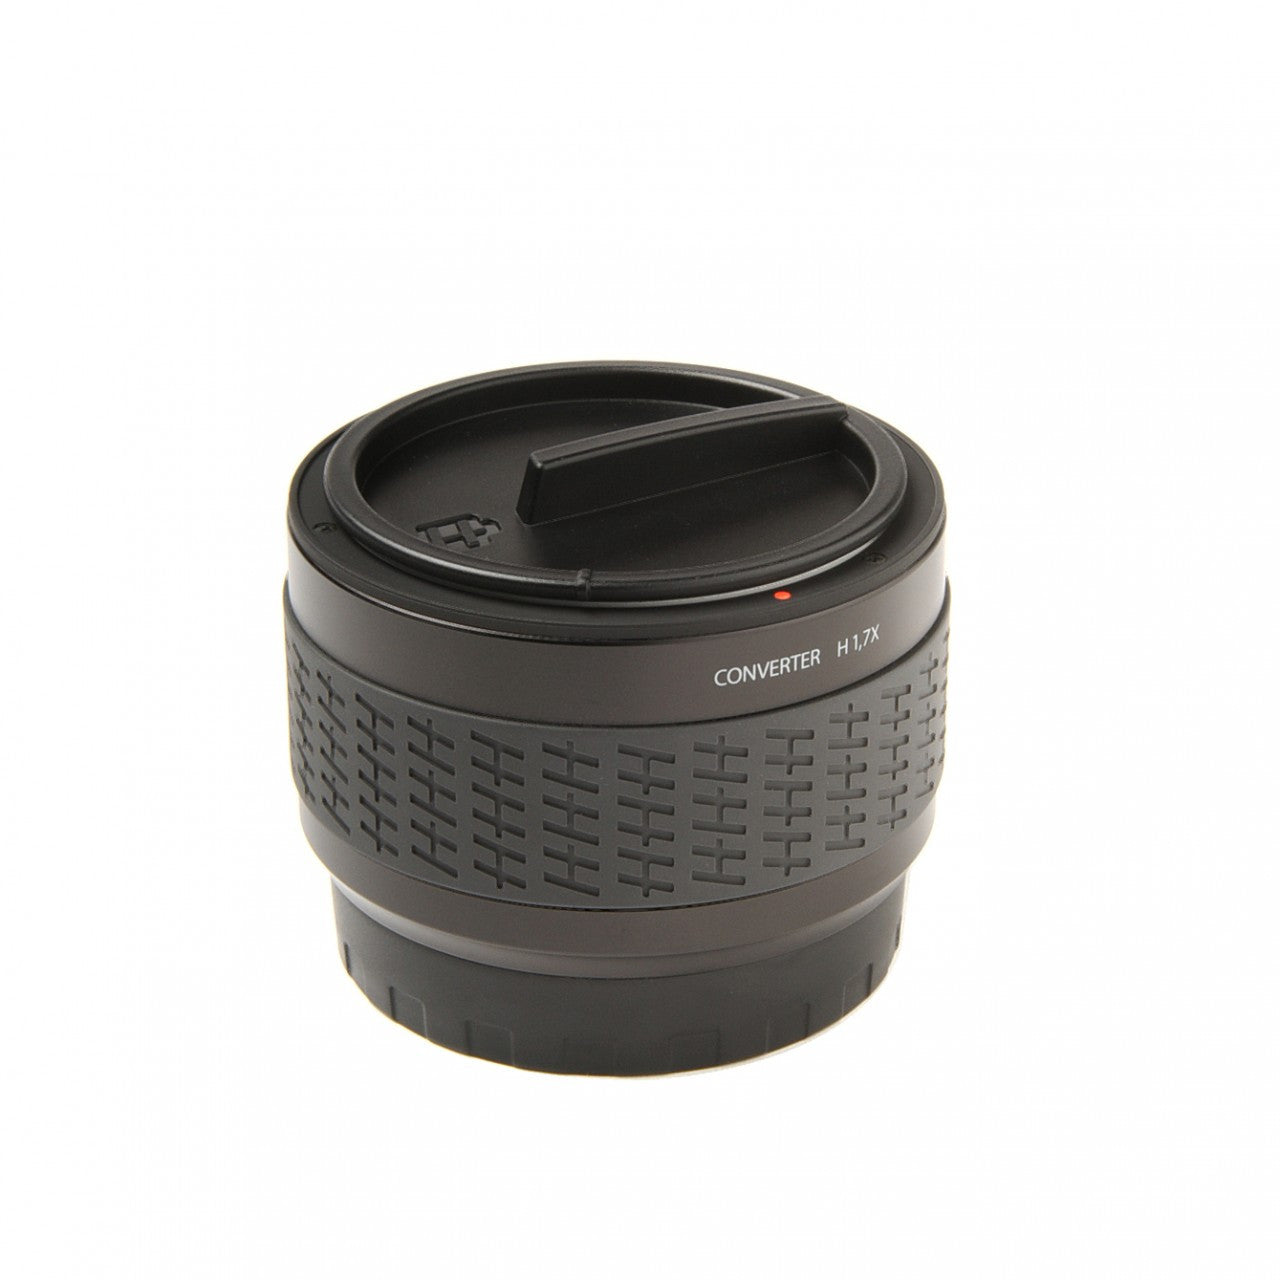 Hasselblad Converter H 1.7X, camera medium format accessories, Hasselblad - Pictureline 